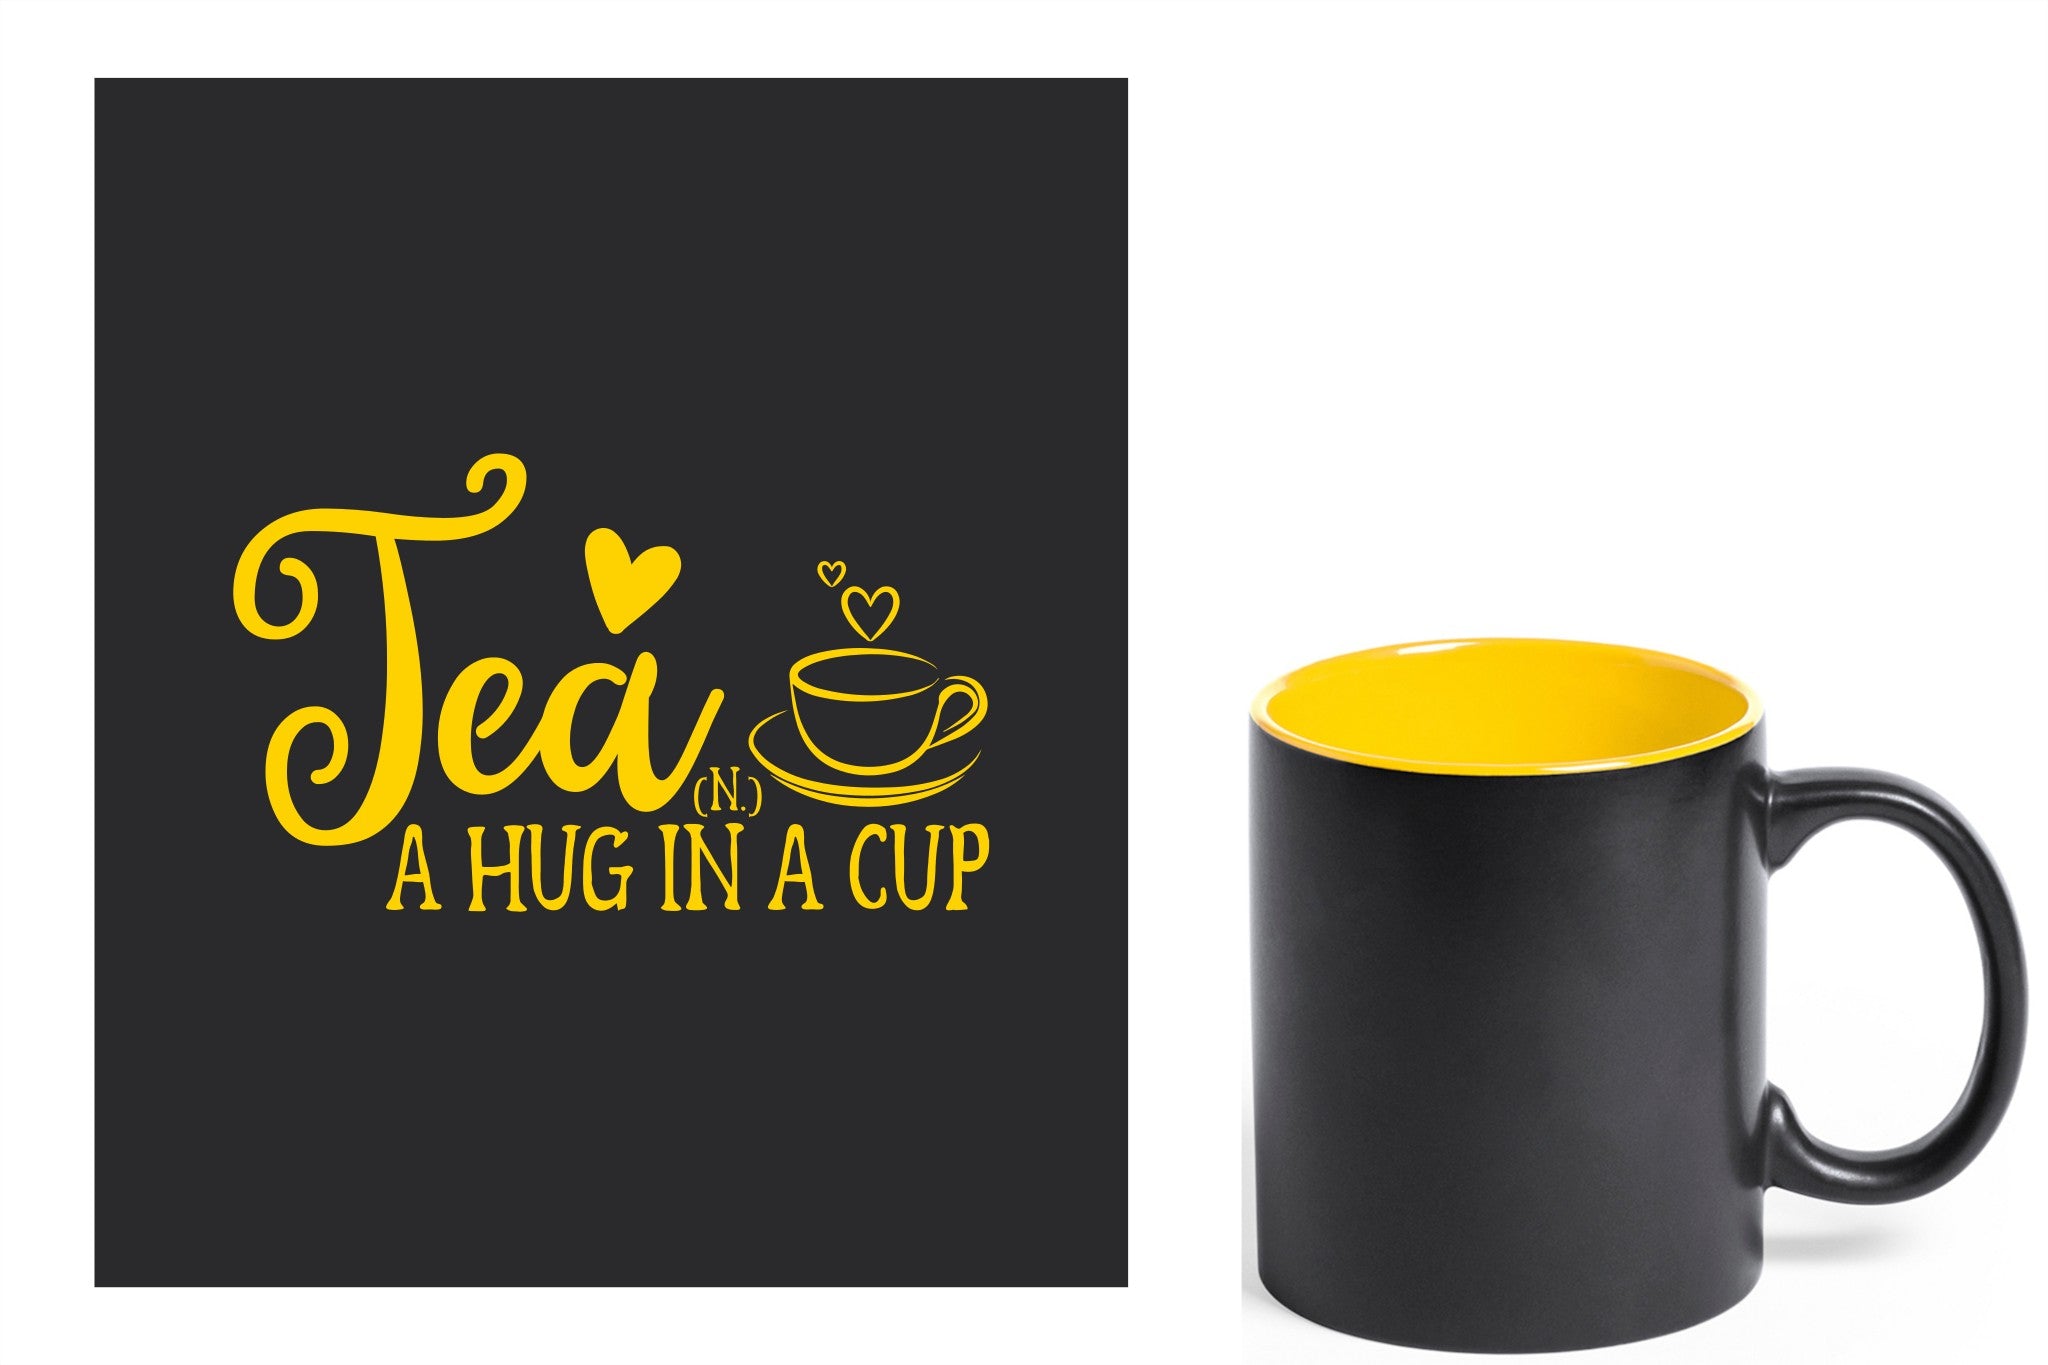 zwarte keramische mok met gele gravure  'Tea and a hug in a cup'.